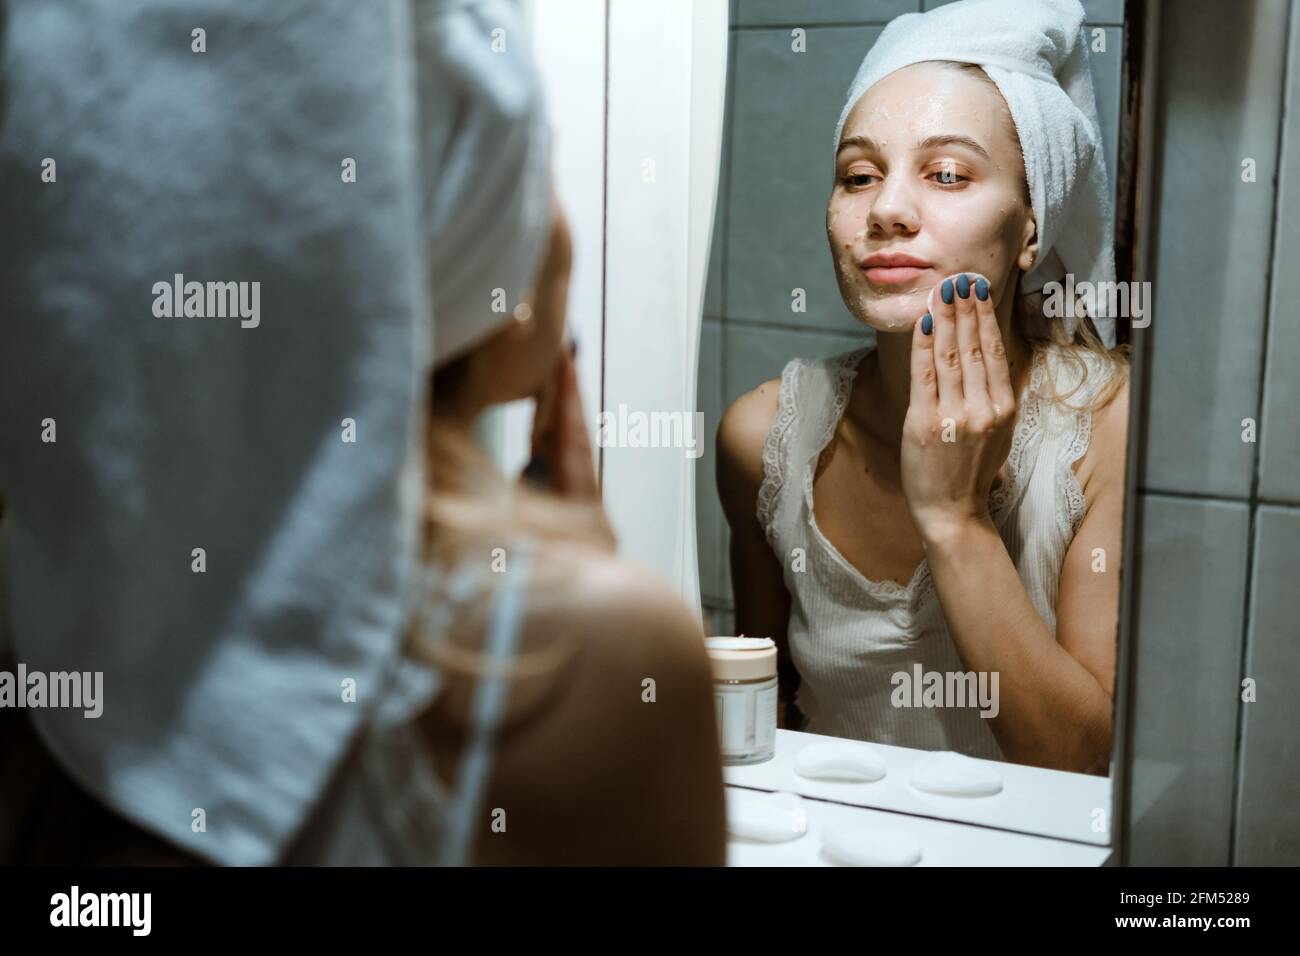 Verwenden Sie Die Gesichtsmaske Zum Abwaschen, Und Verwenden Sie Die Maske Zum Abwaschen Korrekt. Junge Frau im Handtuch auf ihrem Kopf Gesicht waschen, nachdem sie die Maske im Badezimmer entfernt. Stockfoto